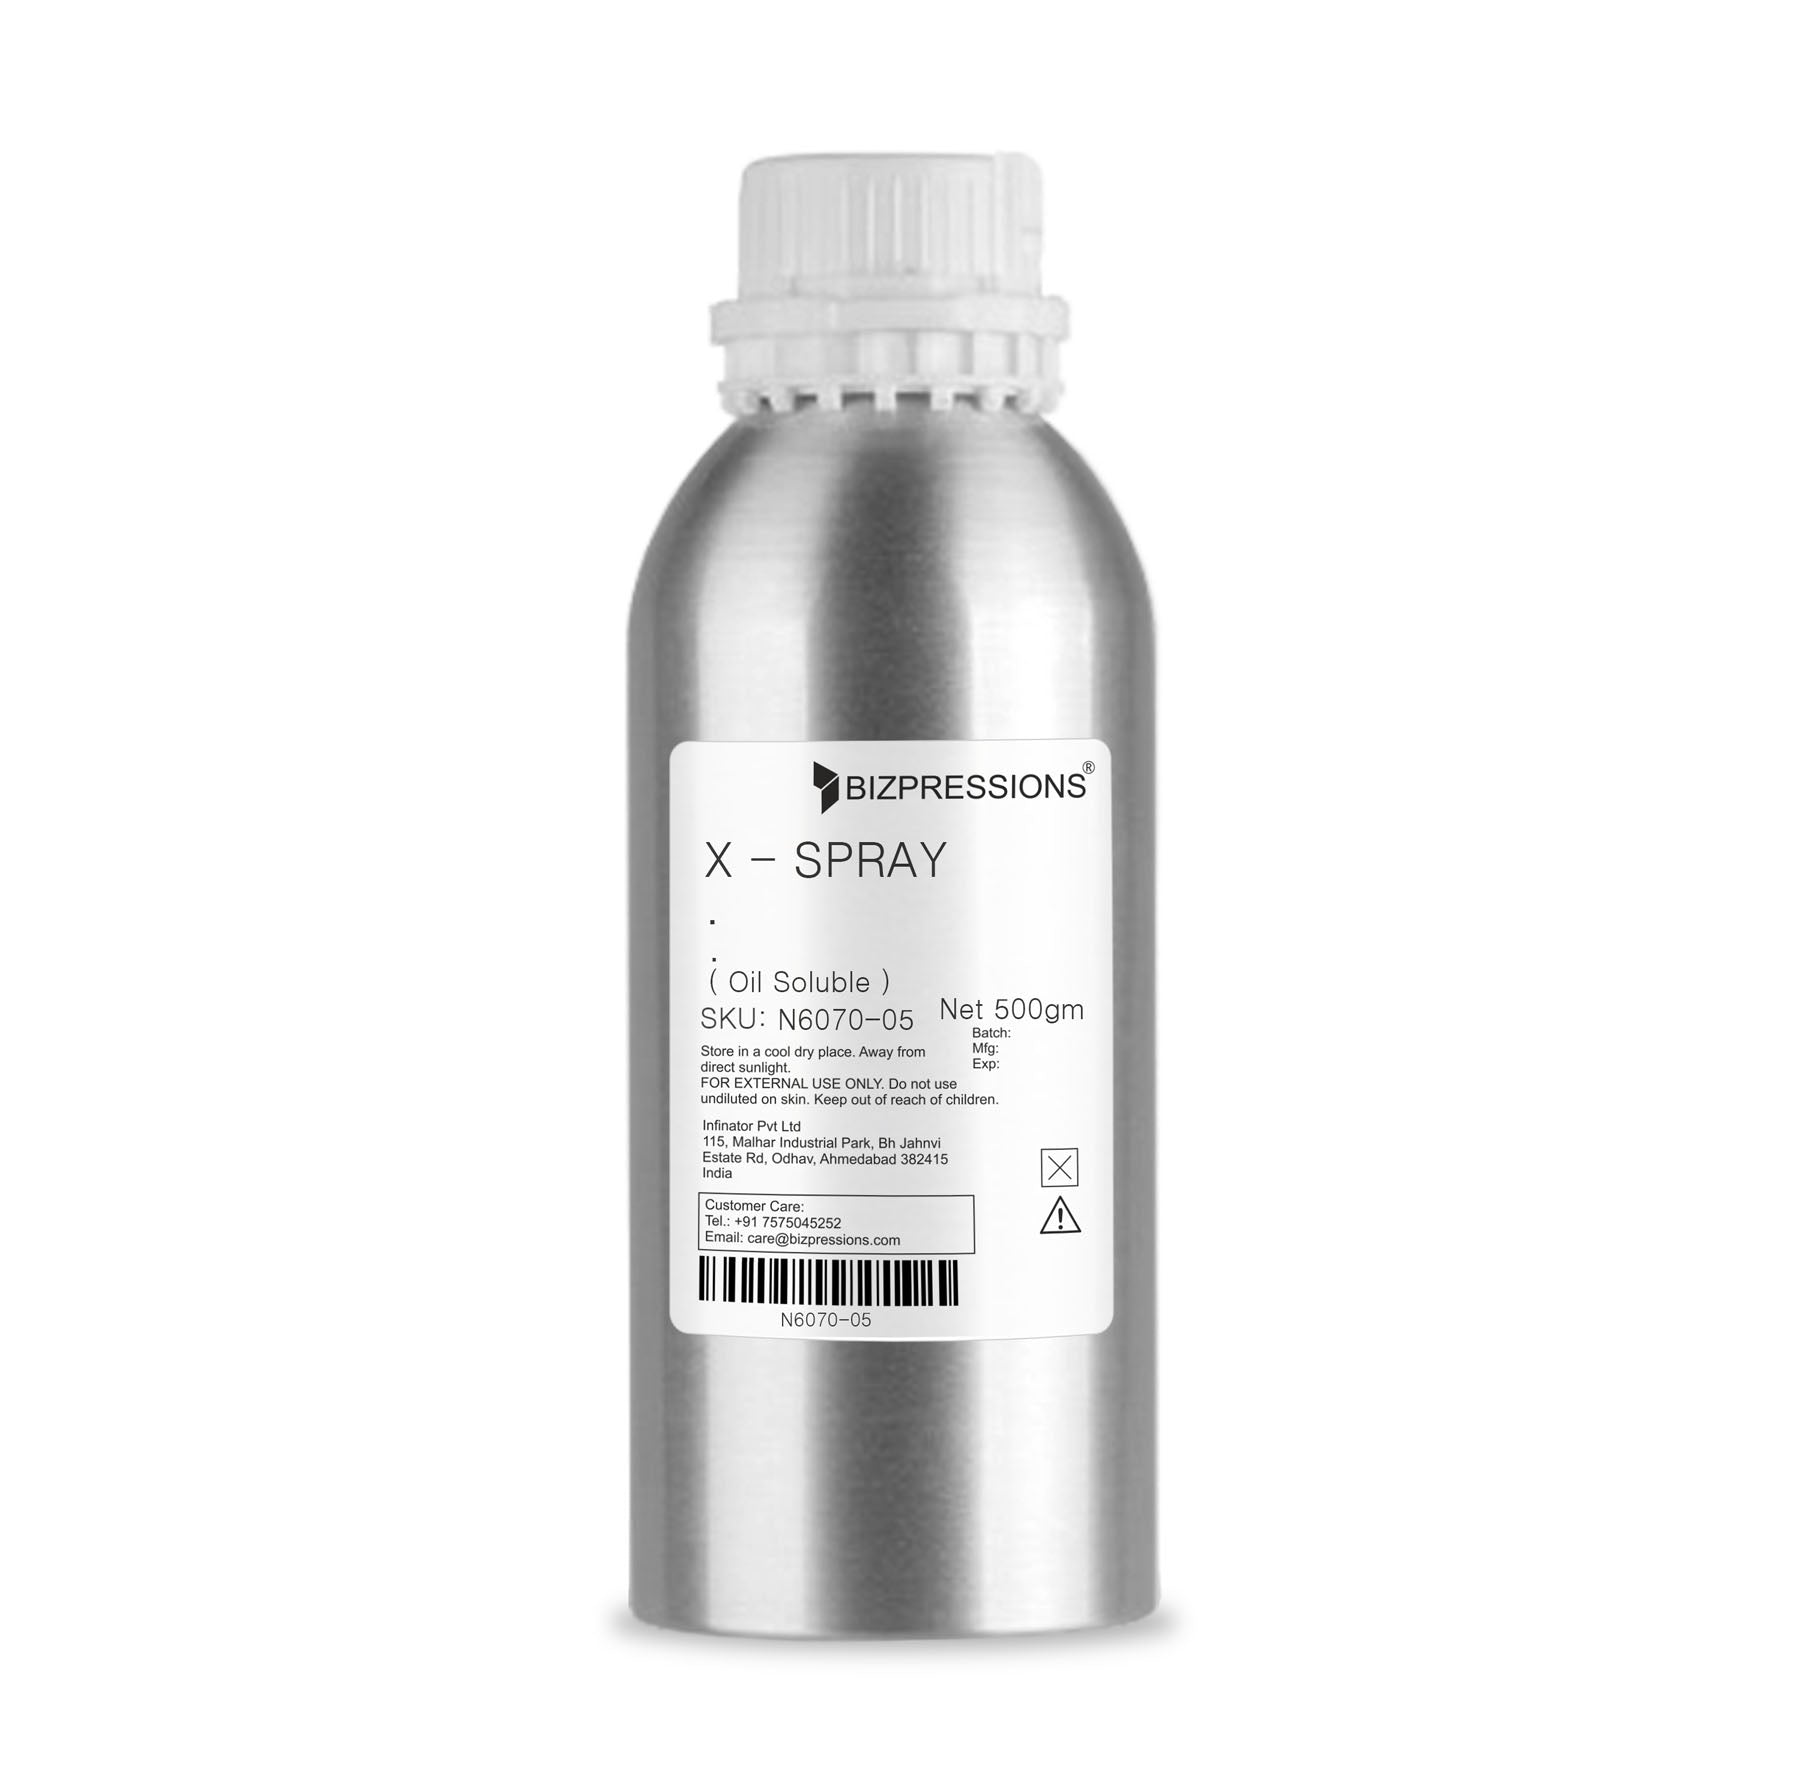 X - SPRAY - Fragrance ( Oil Soluble ) - 500 gm